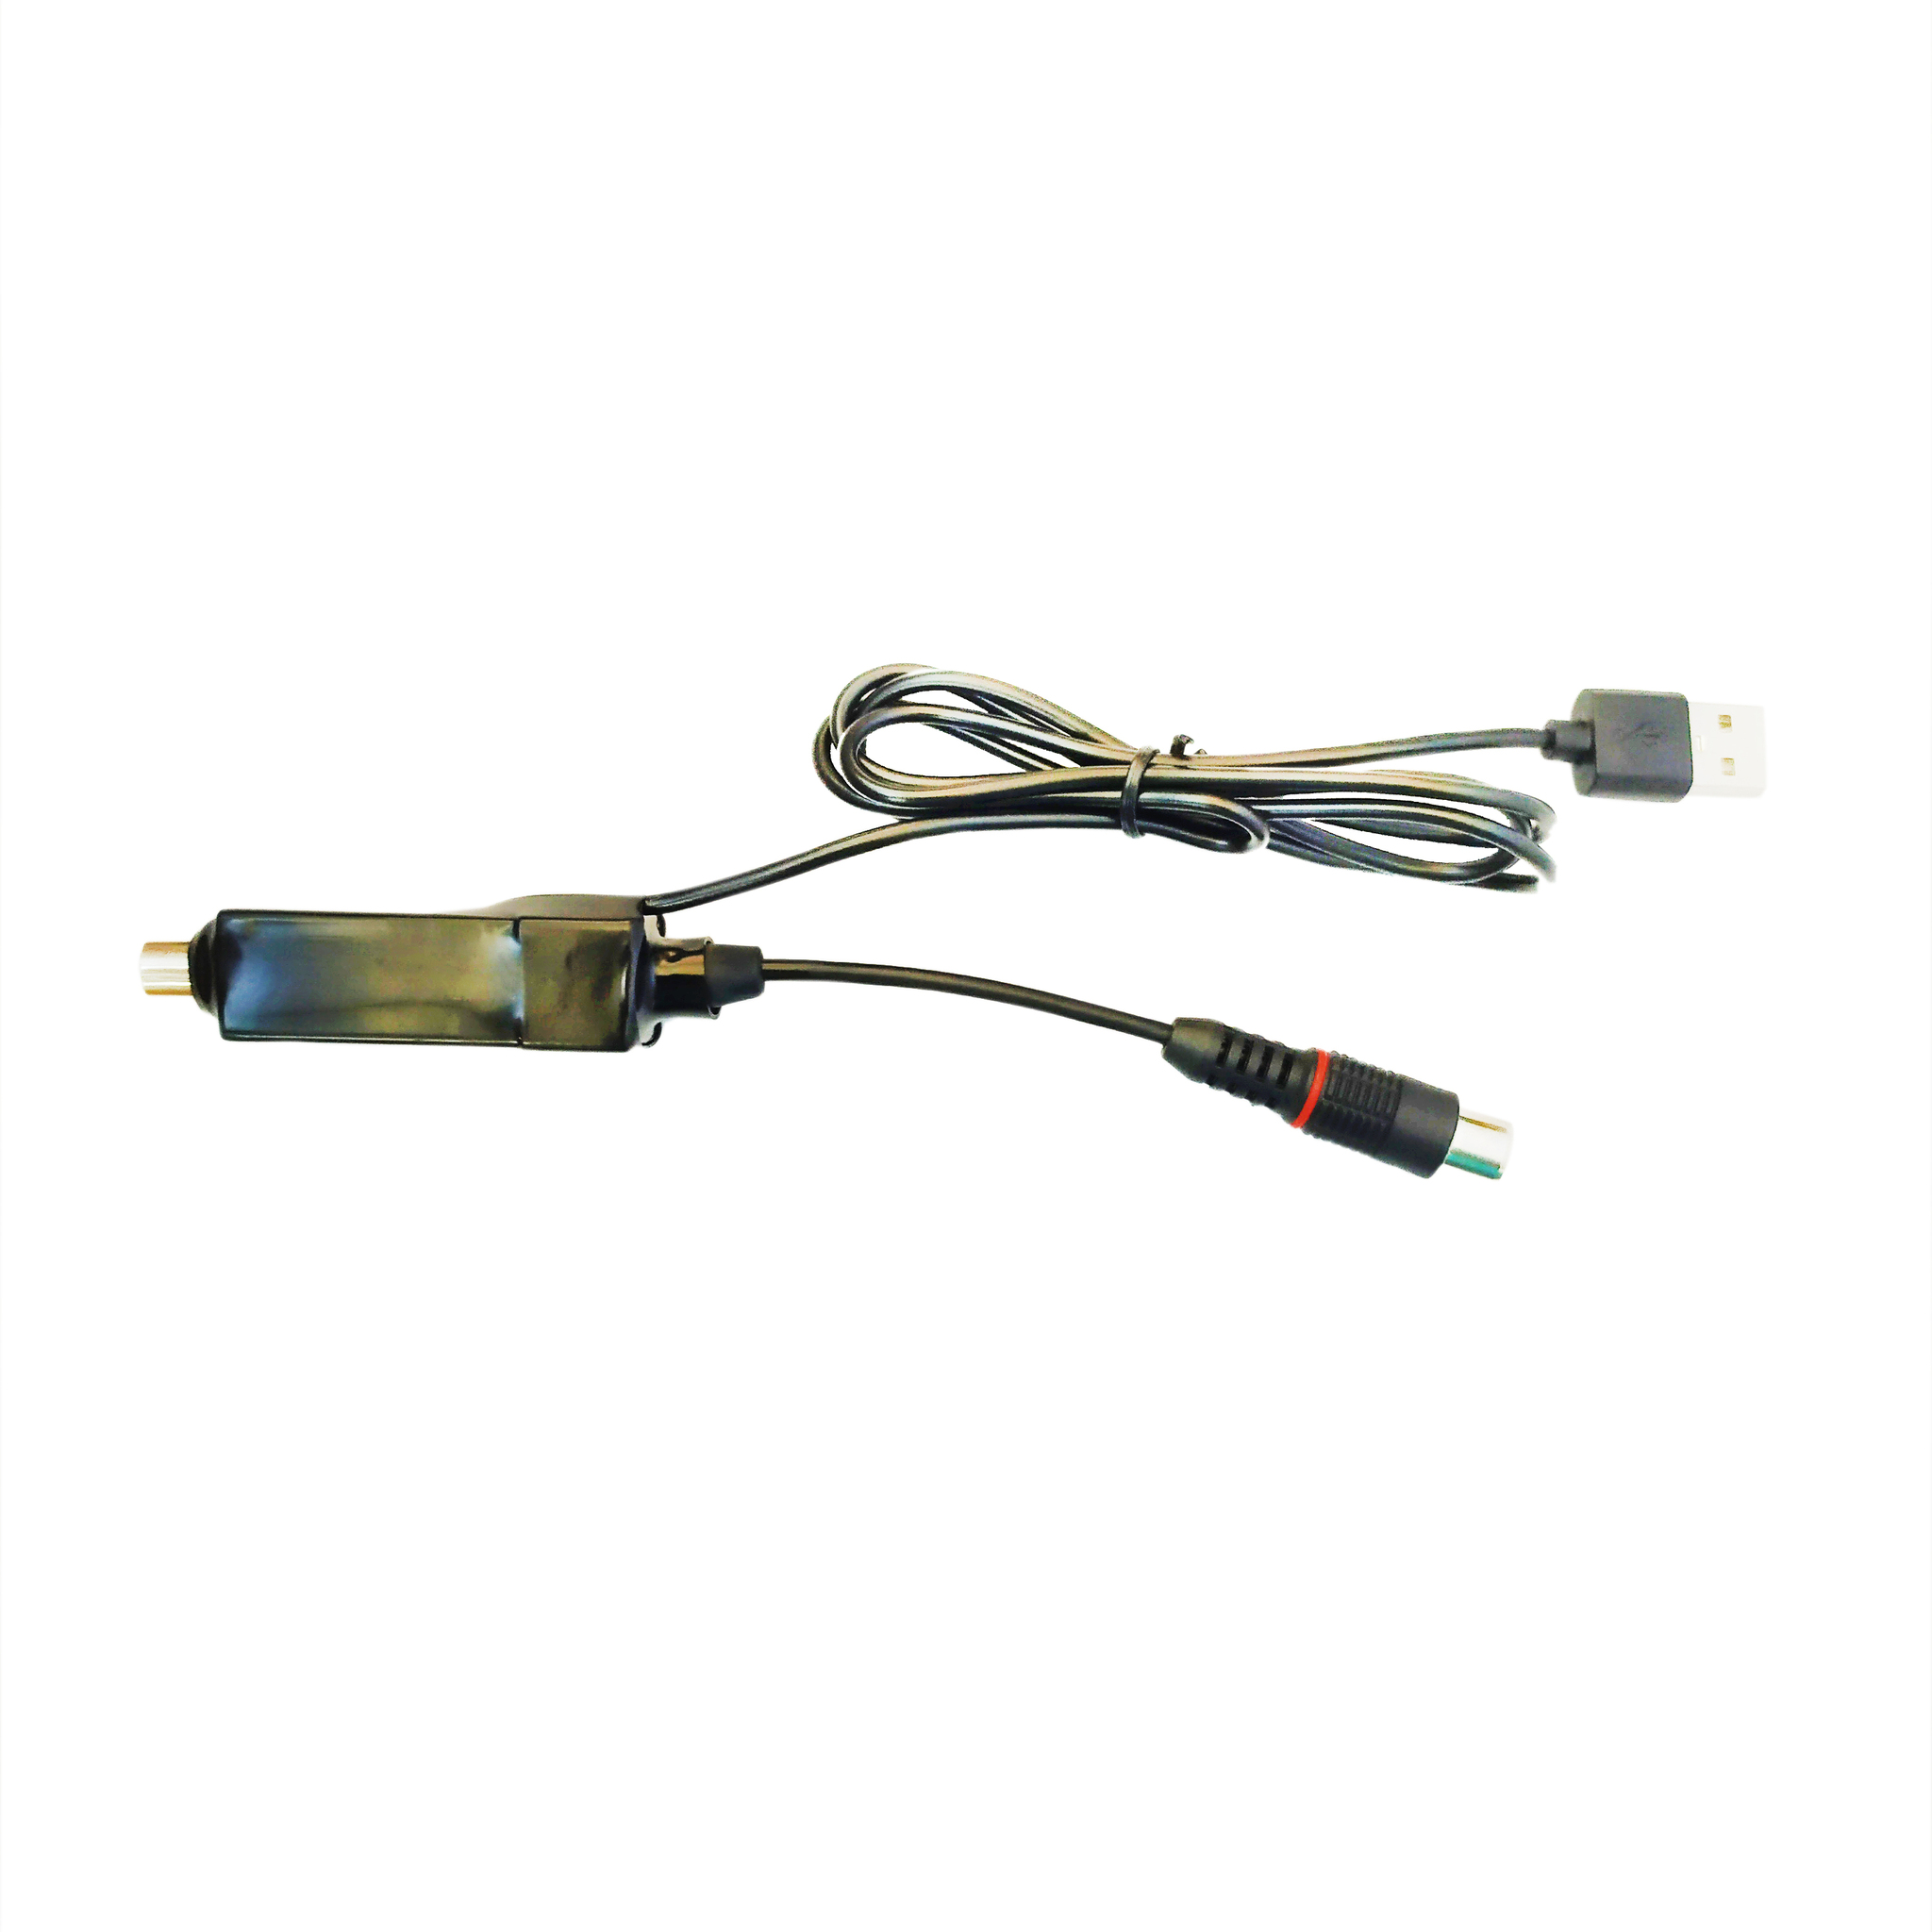 Усилитель ДМВ+МВ УСШ-2A-USB in door, коэфф усиления МВ/ДМВ: 28-32 дБ, встр блок питания